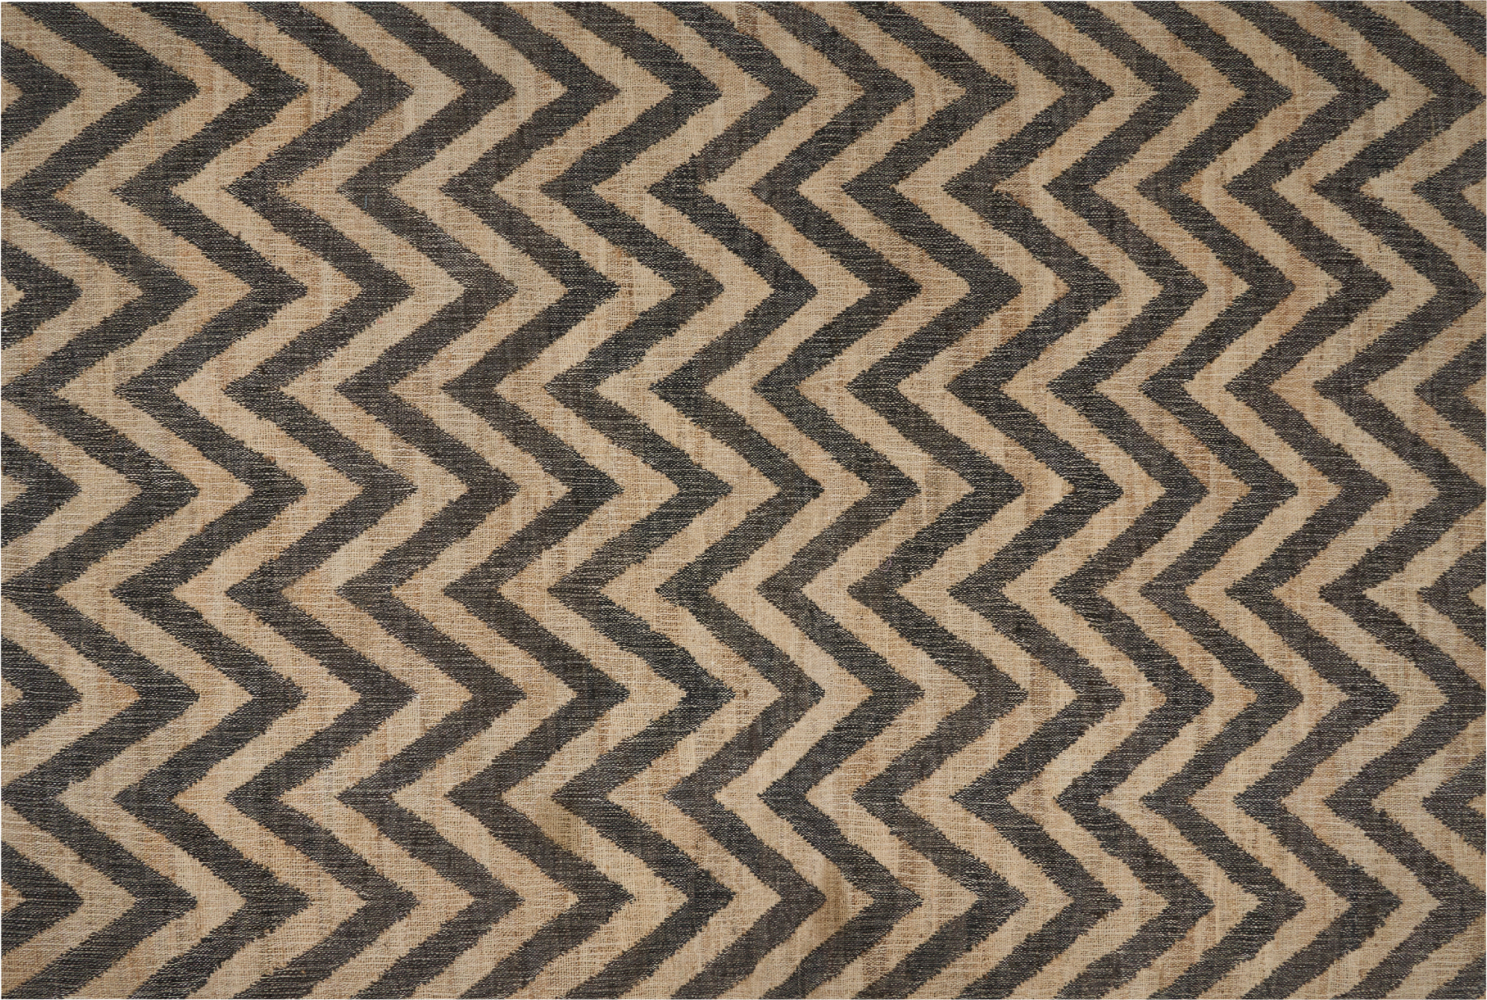 Teppich Jute beige schwarz 200 x 300 cm ZickZack-Muster Kurzflor DEDEPINARI Bild 1